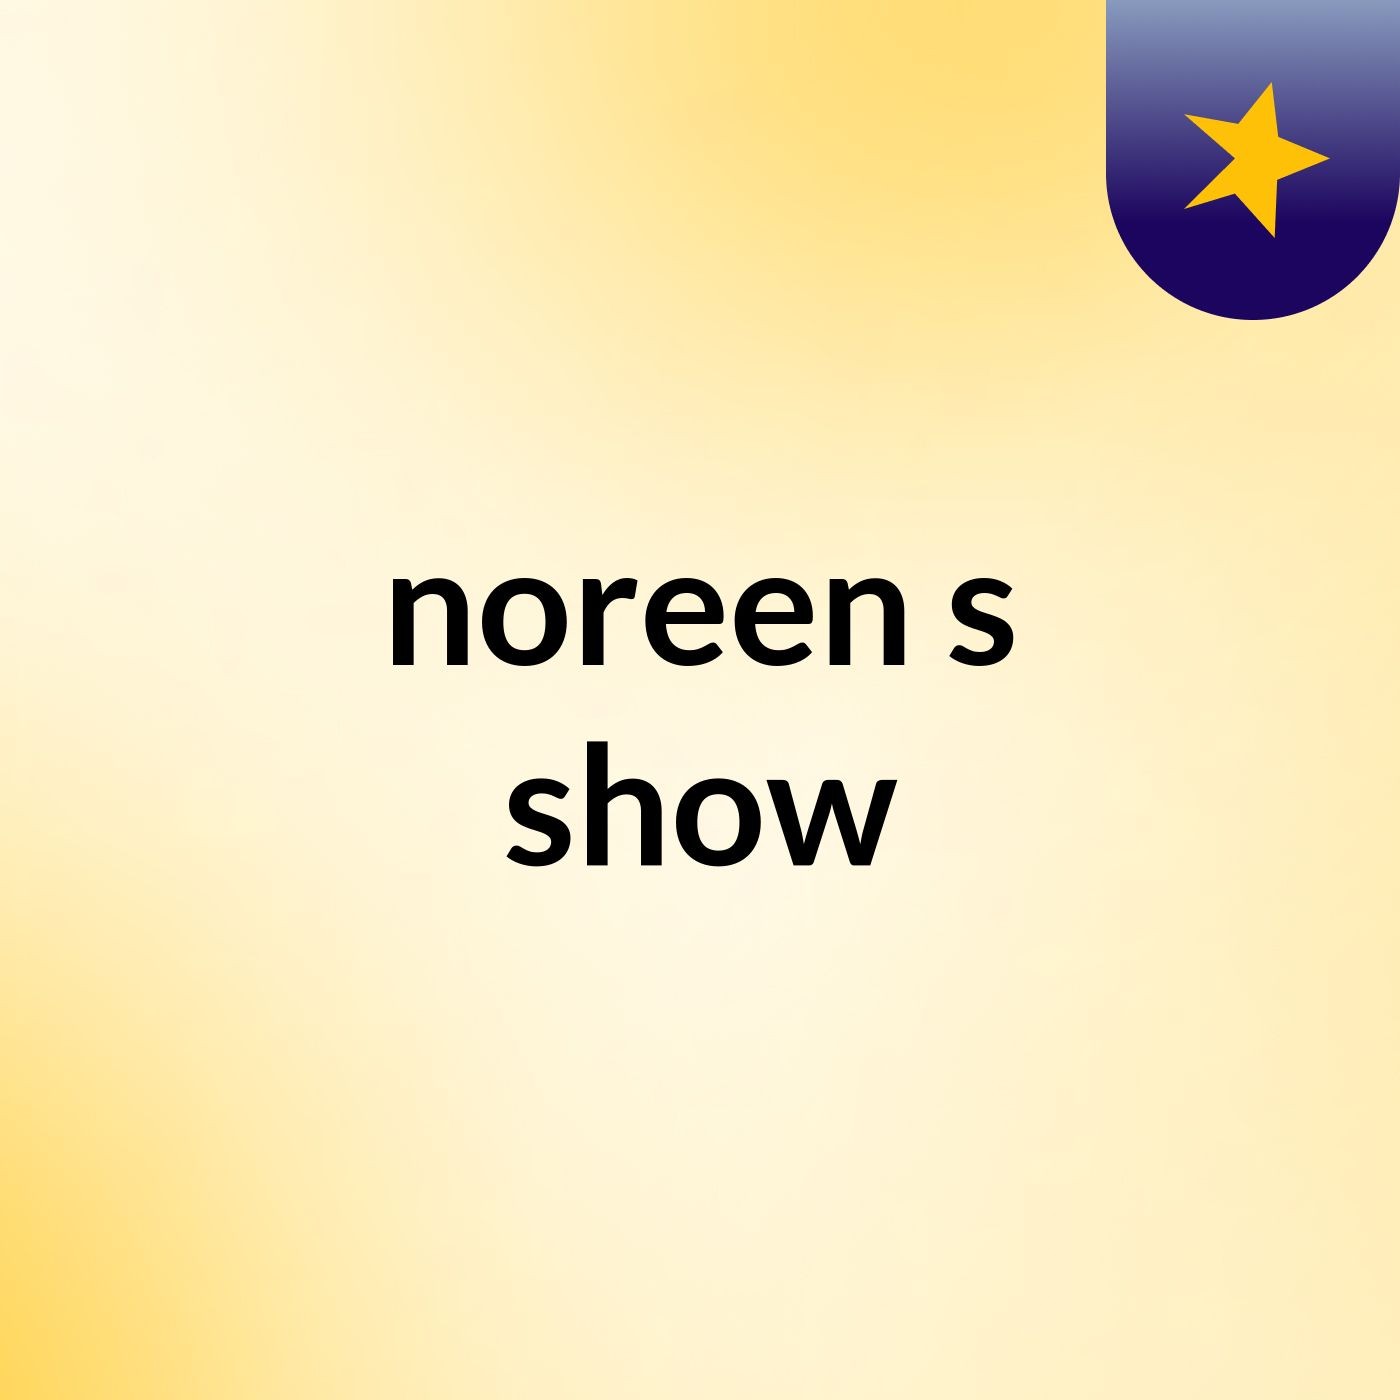 noreen's show